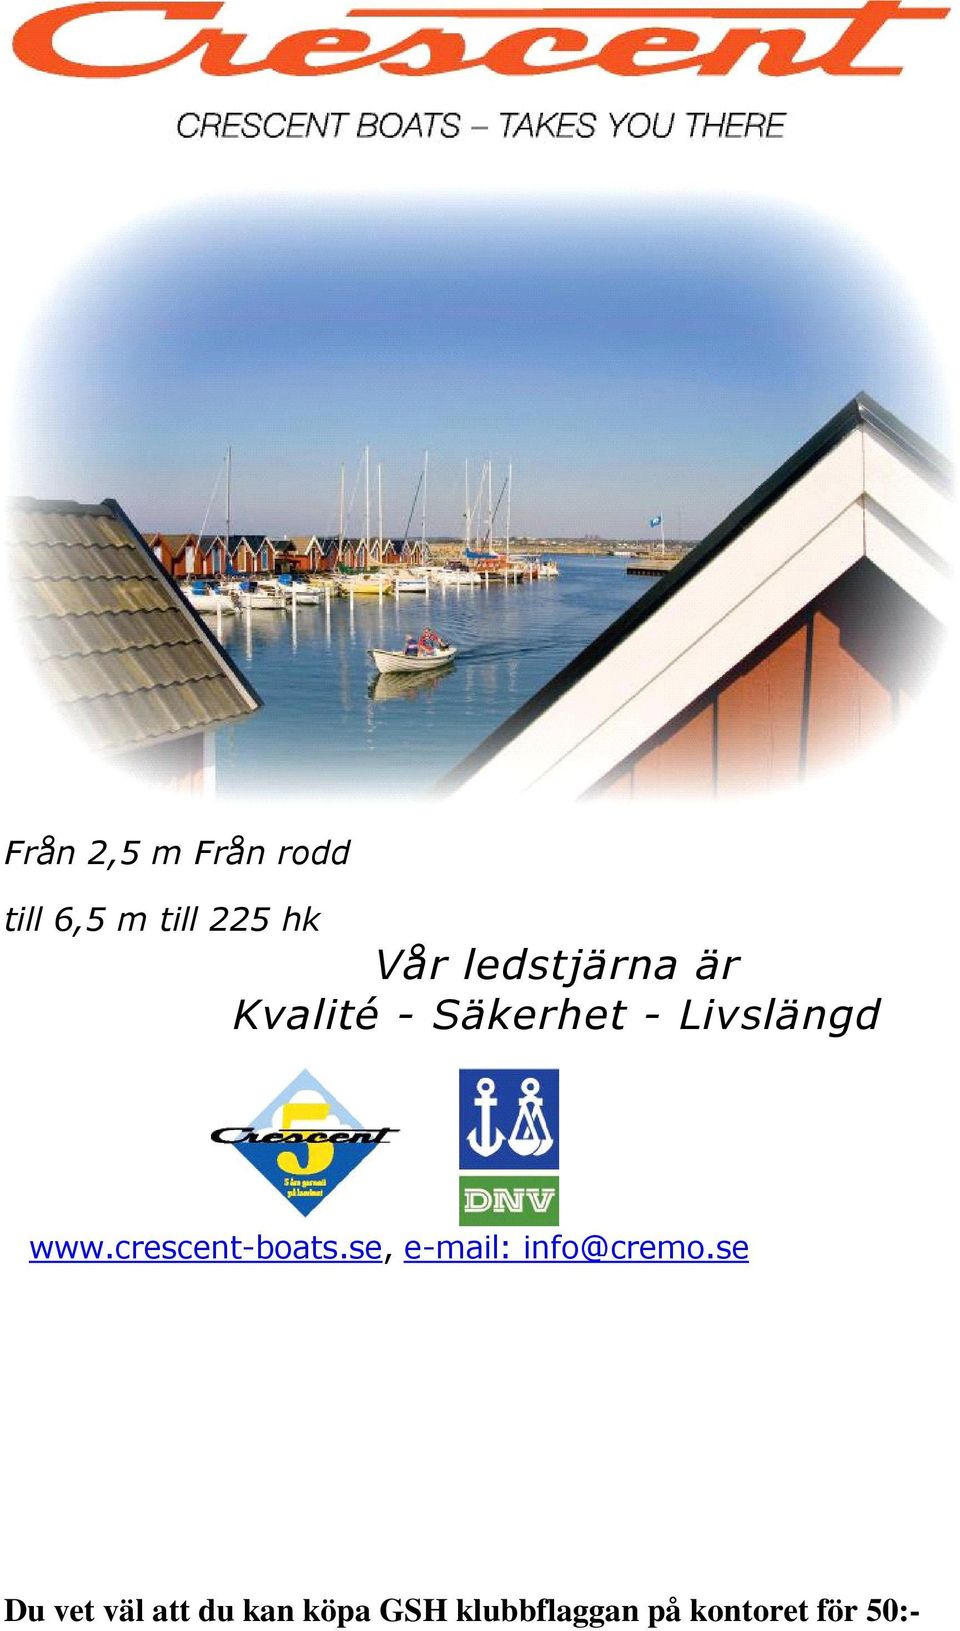 crescent-boats.se, e-mail: info@cremo.